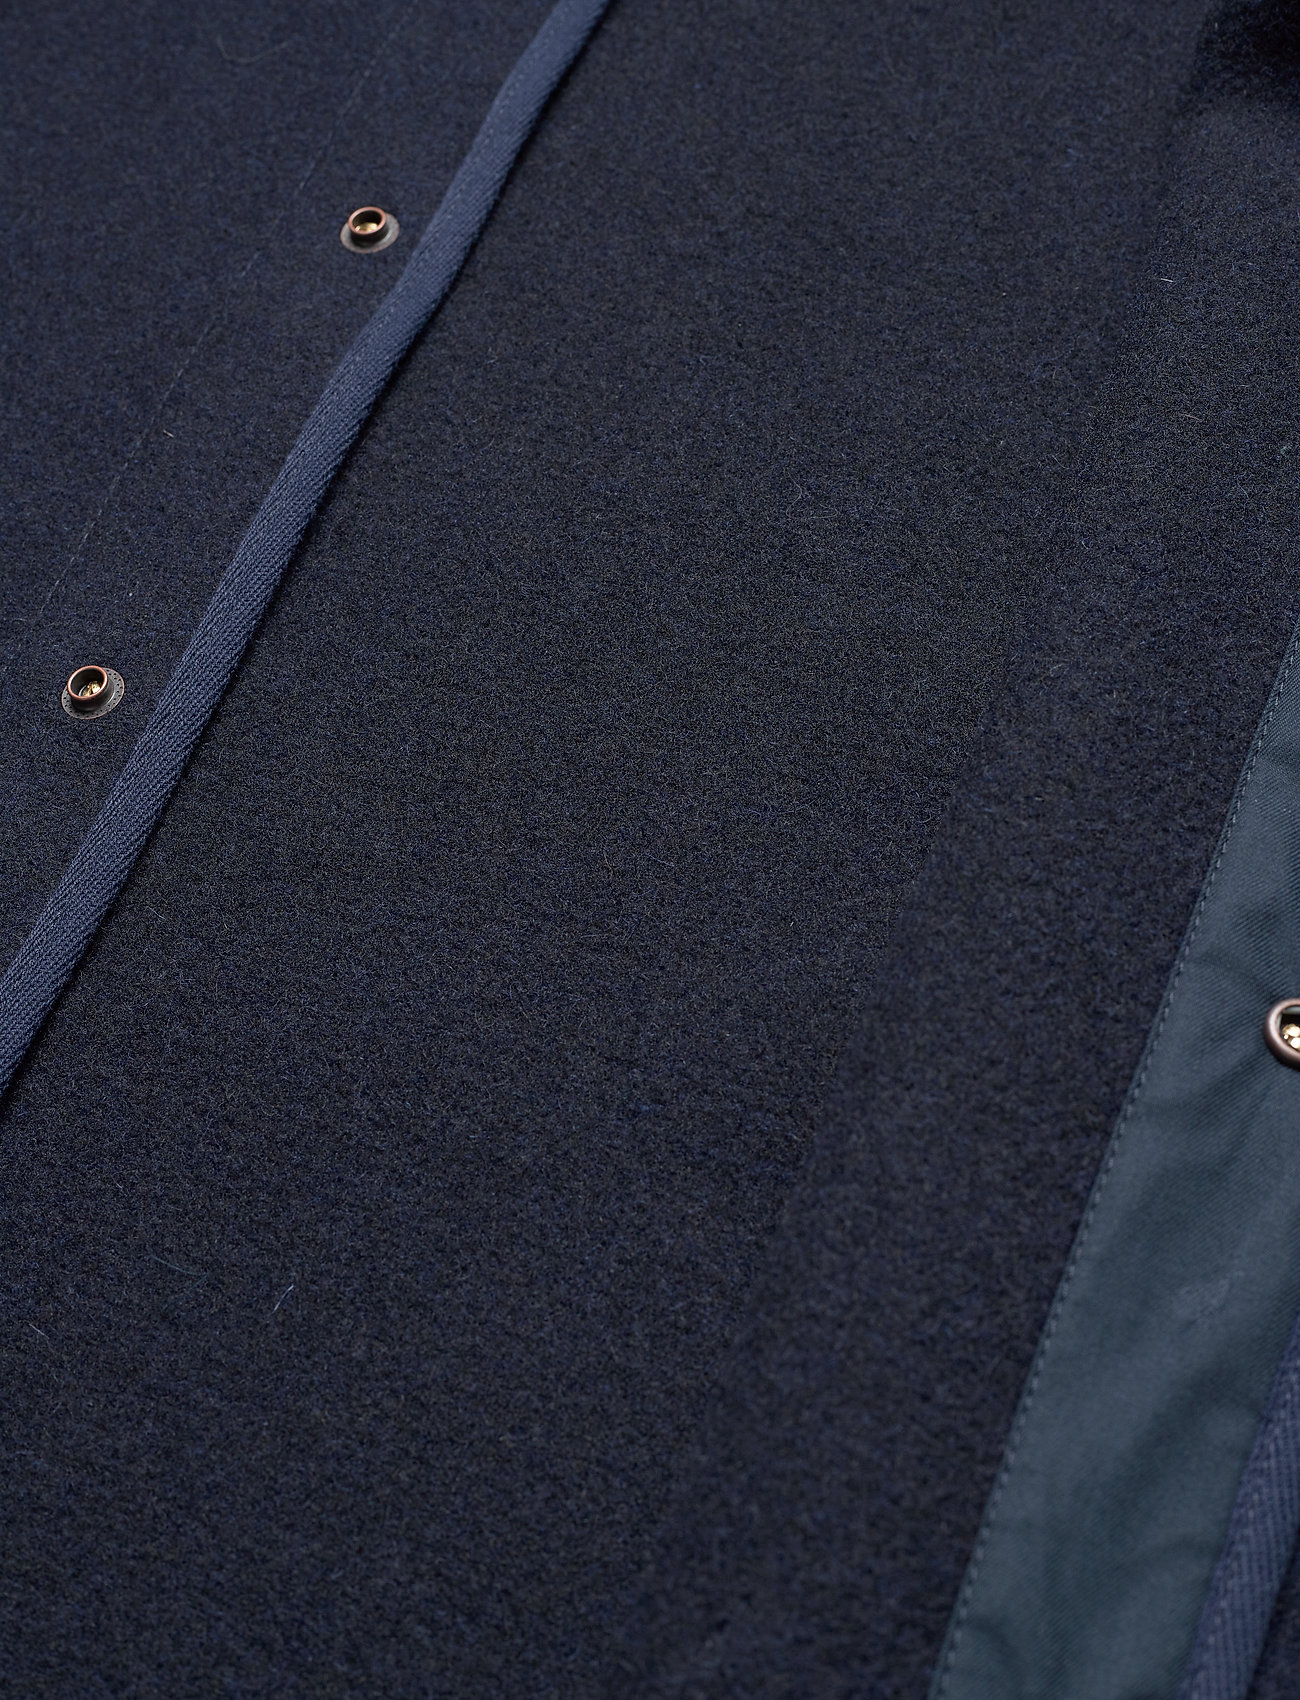 Nudie Jeans - Fred Cloth Jacket Navy - spijkerjasjes zonder voering - navy - 7